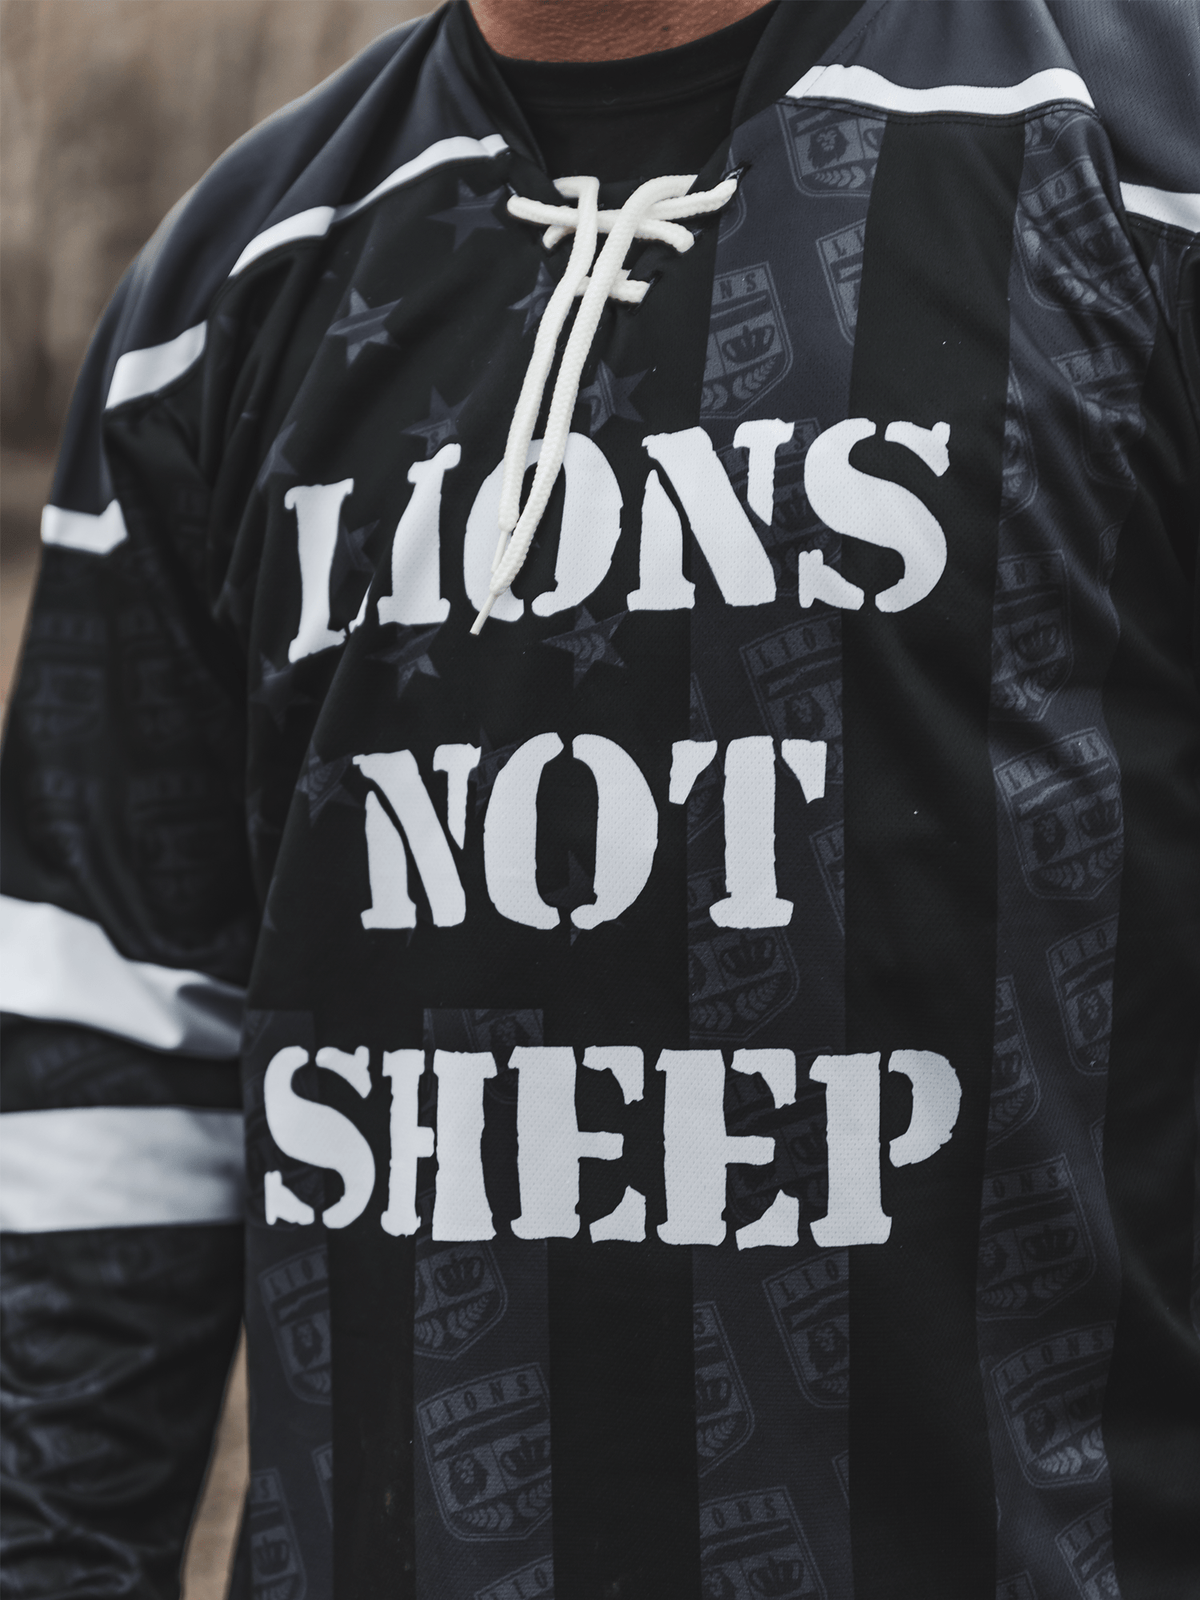 LIONS NOT SHEEP OG Hockey Jersey - Lions Not Sheep ®